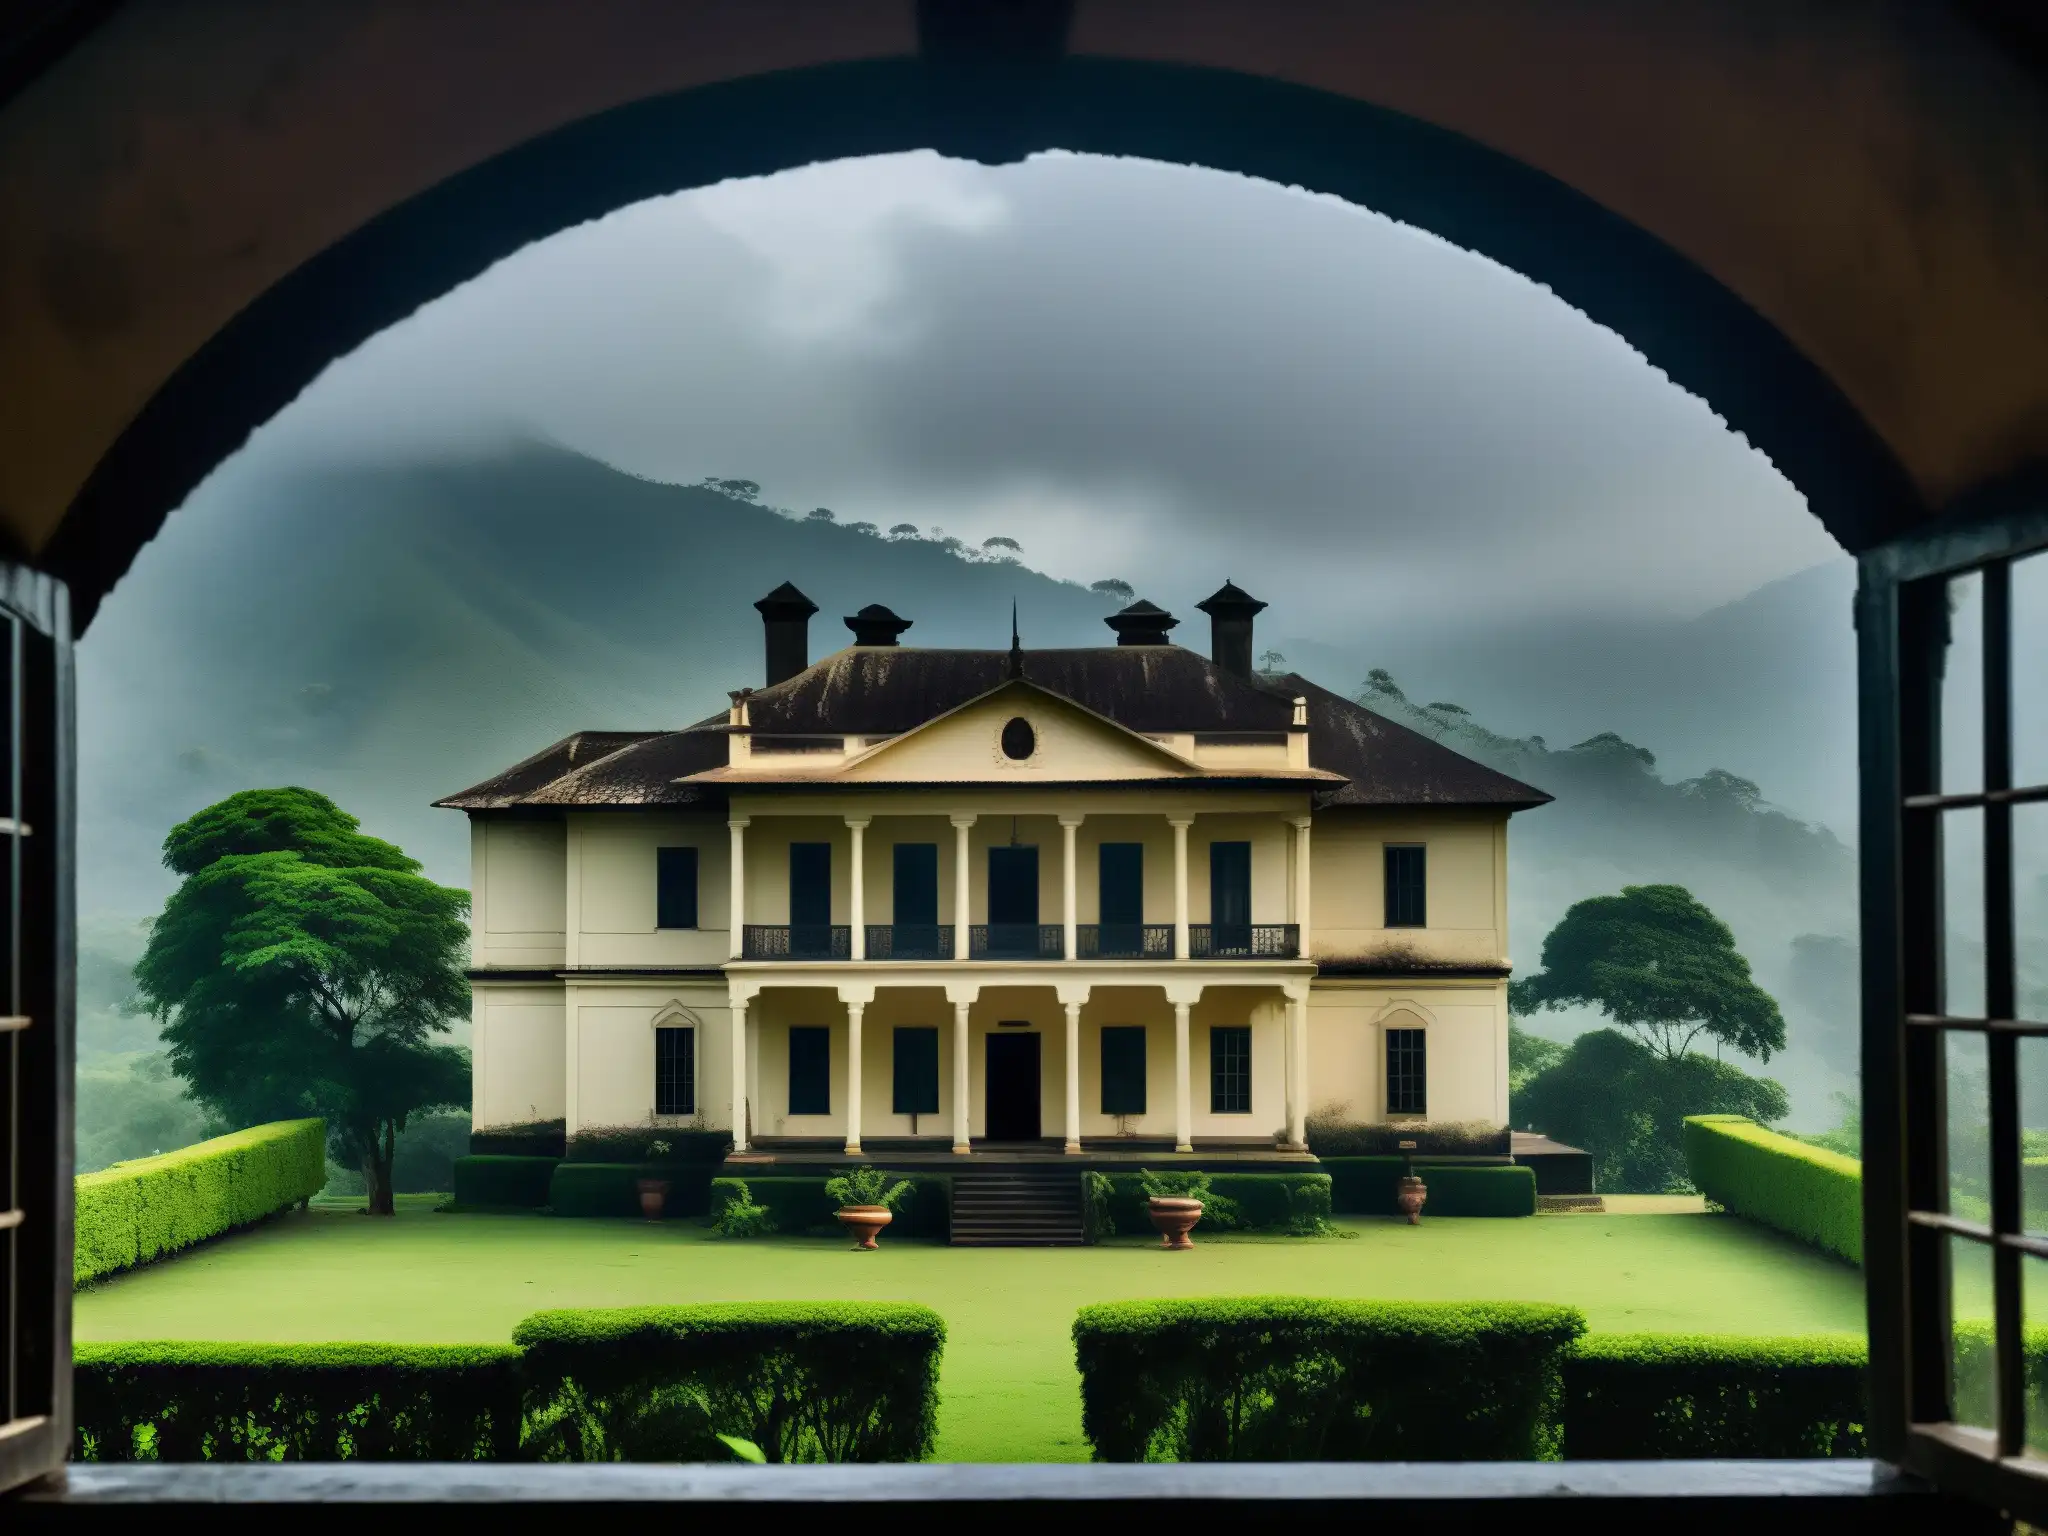 Una mansión colonial en la neblina con figuras fantasmales, perfecta para historias de terror casa siete hermanas